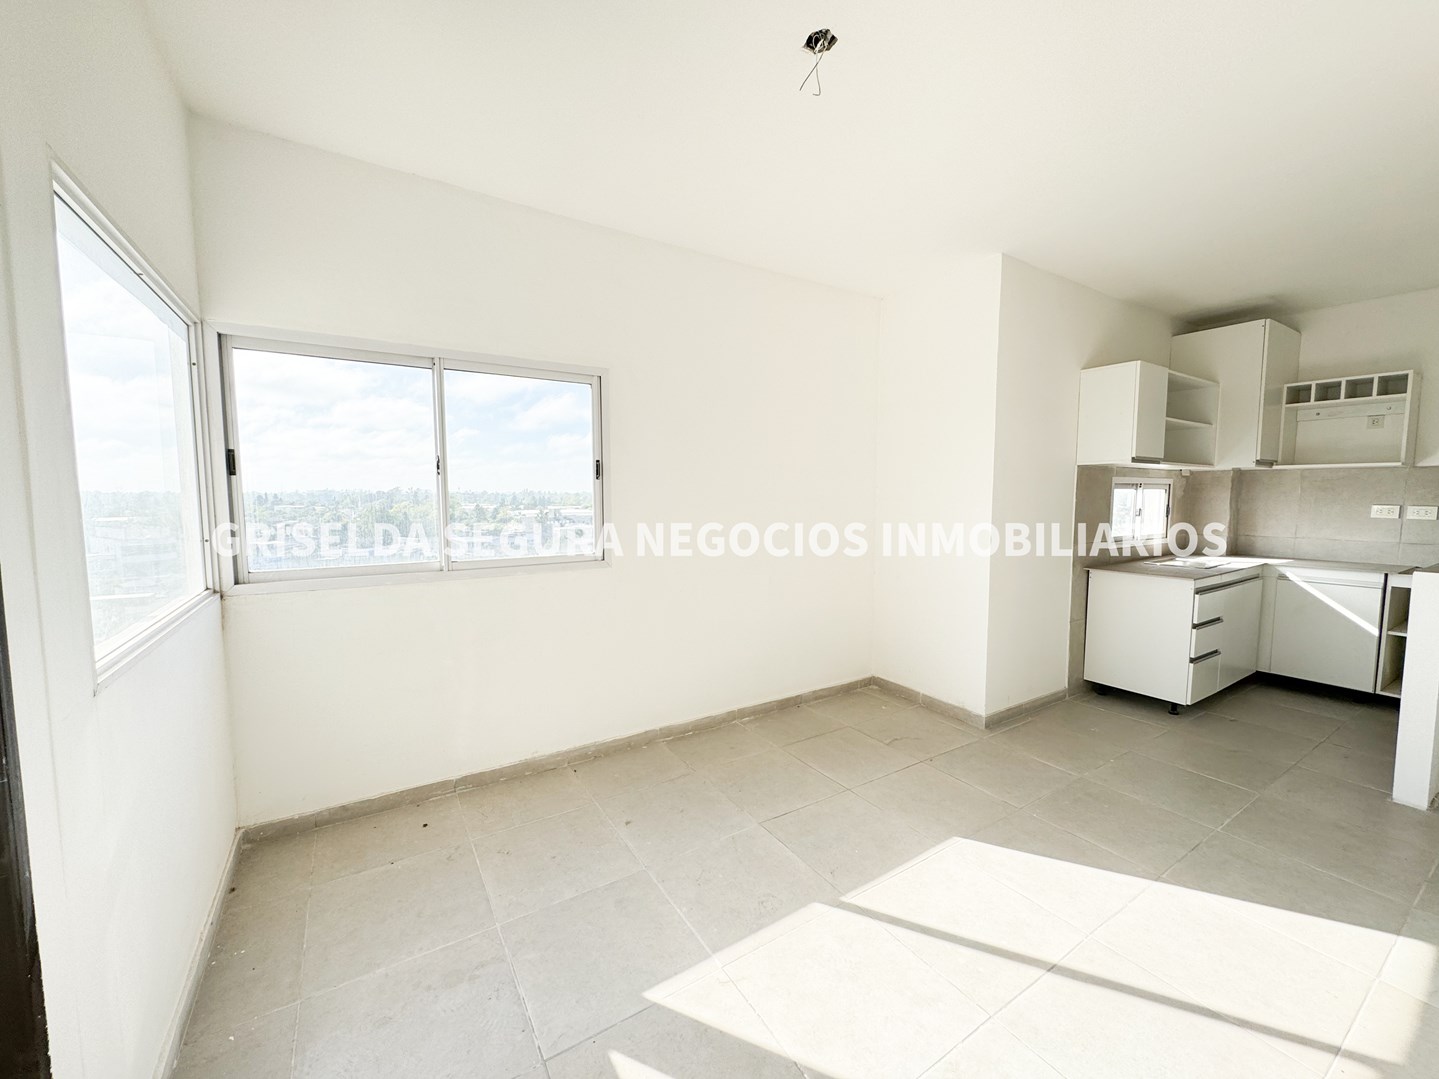 #5014144 | Alquiler | Departamento | Pilar (Griselda Segura Negocios Inmobiliarios)